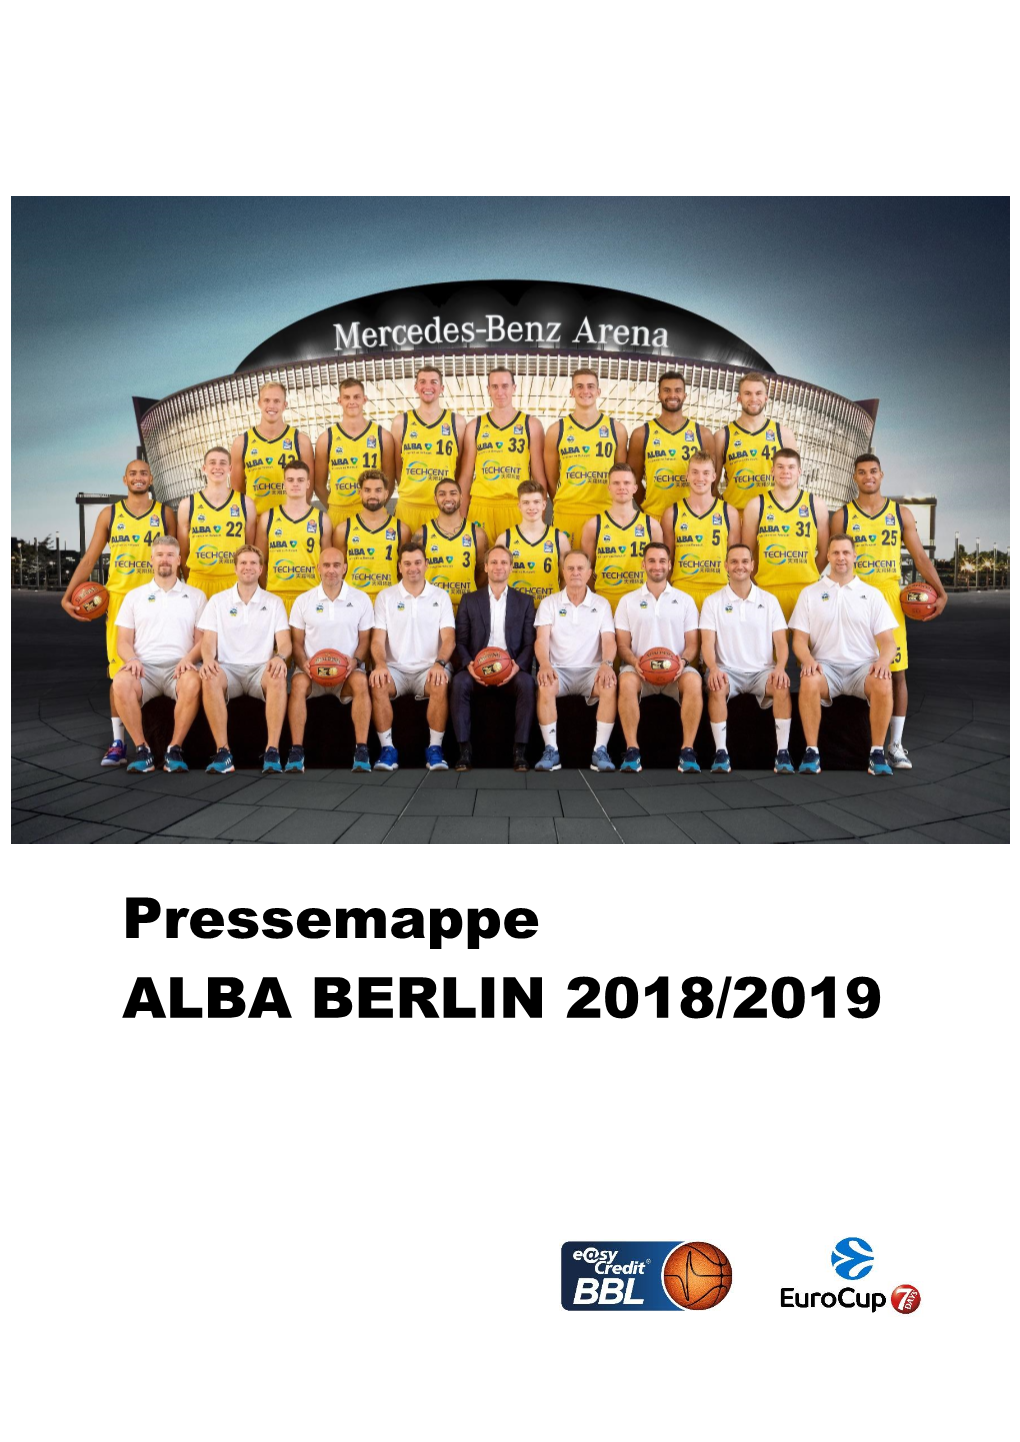 Alba Berlin 2018/2019